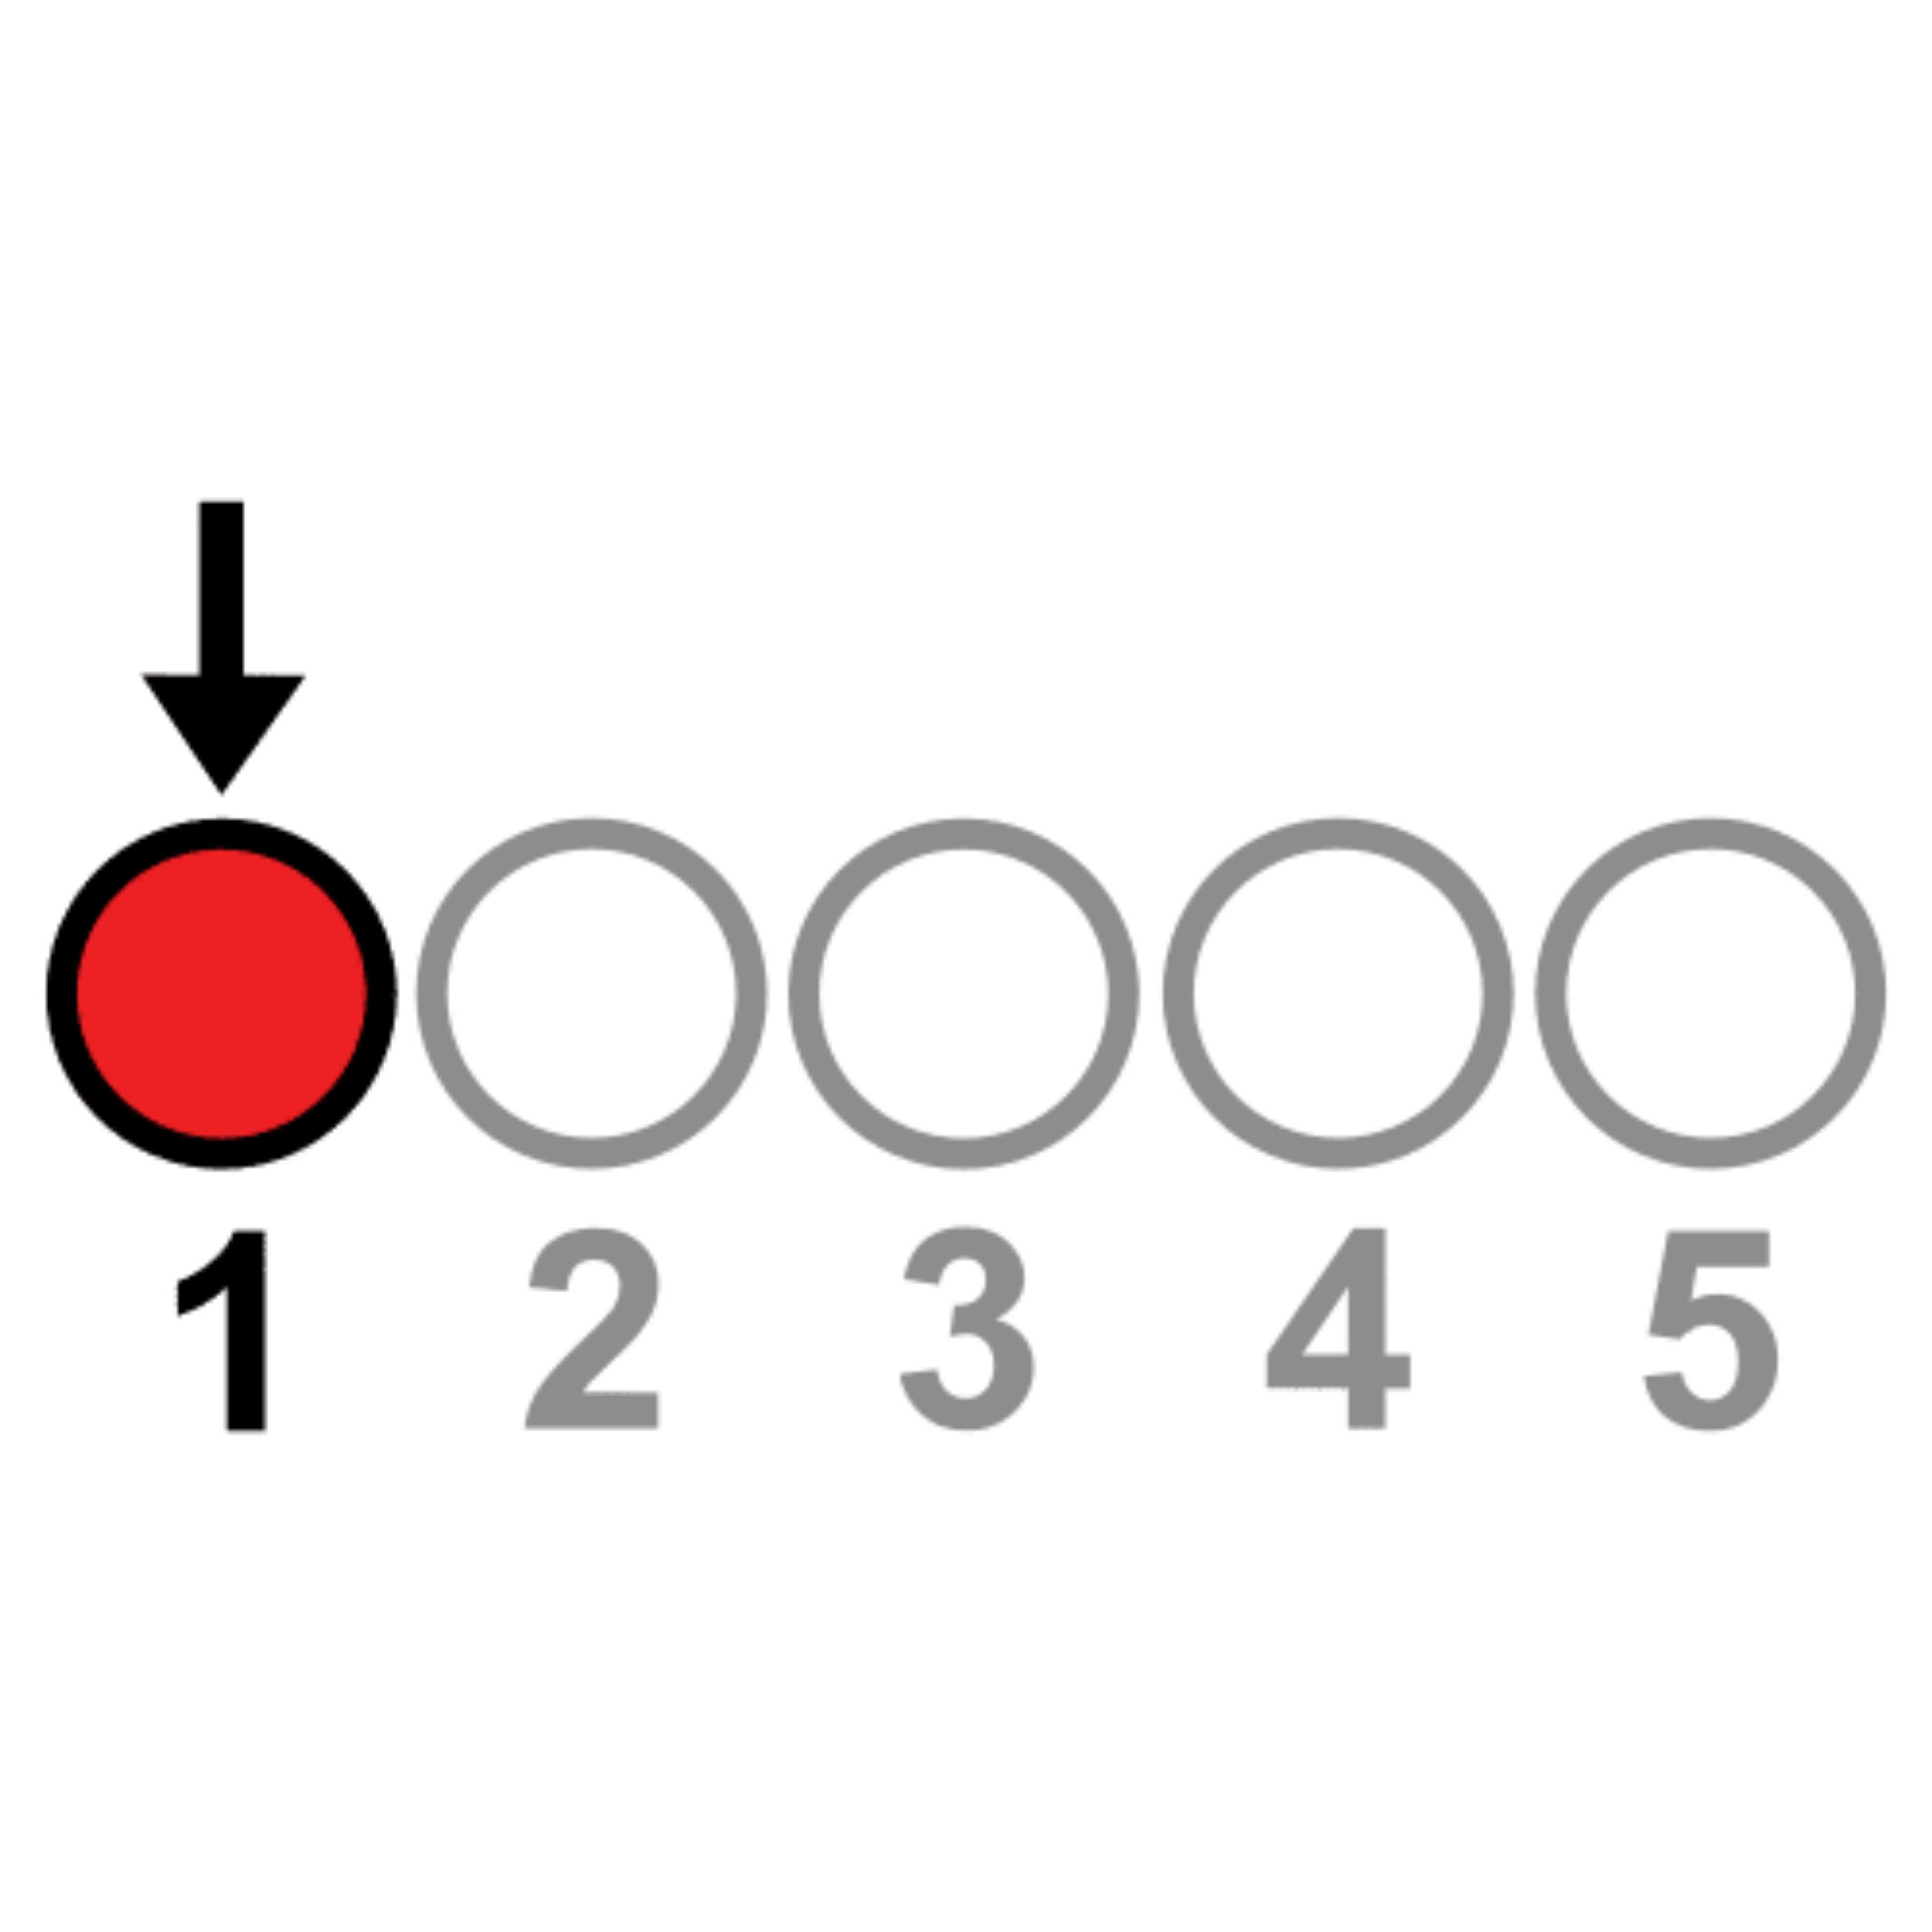 En la imagen puedes ver una serie de círculos alineados, numerados del uno al cinco, con el primero destacado en color rojo y señalado por una flecha